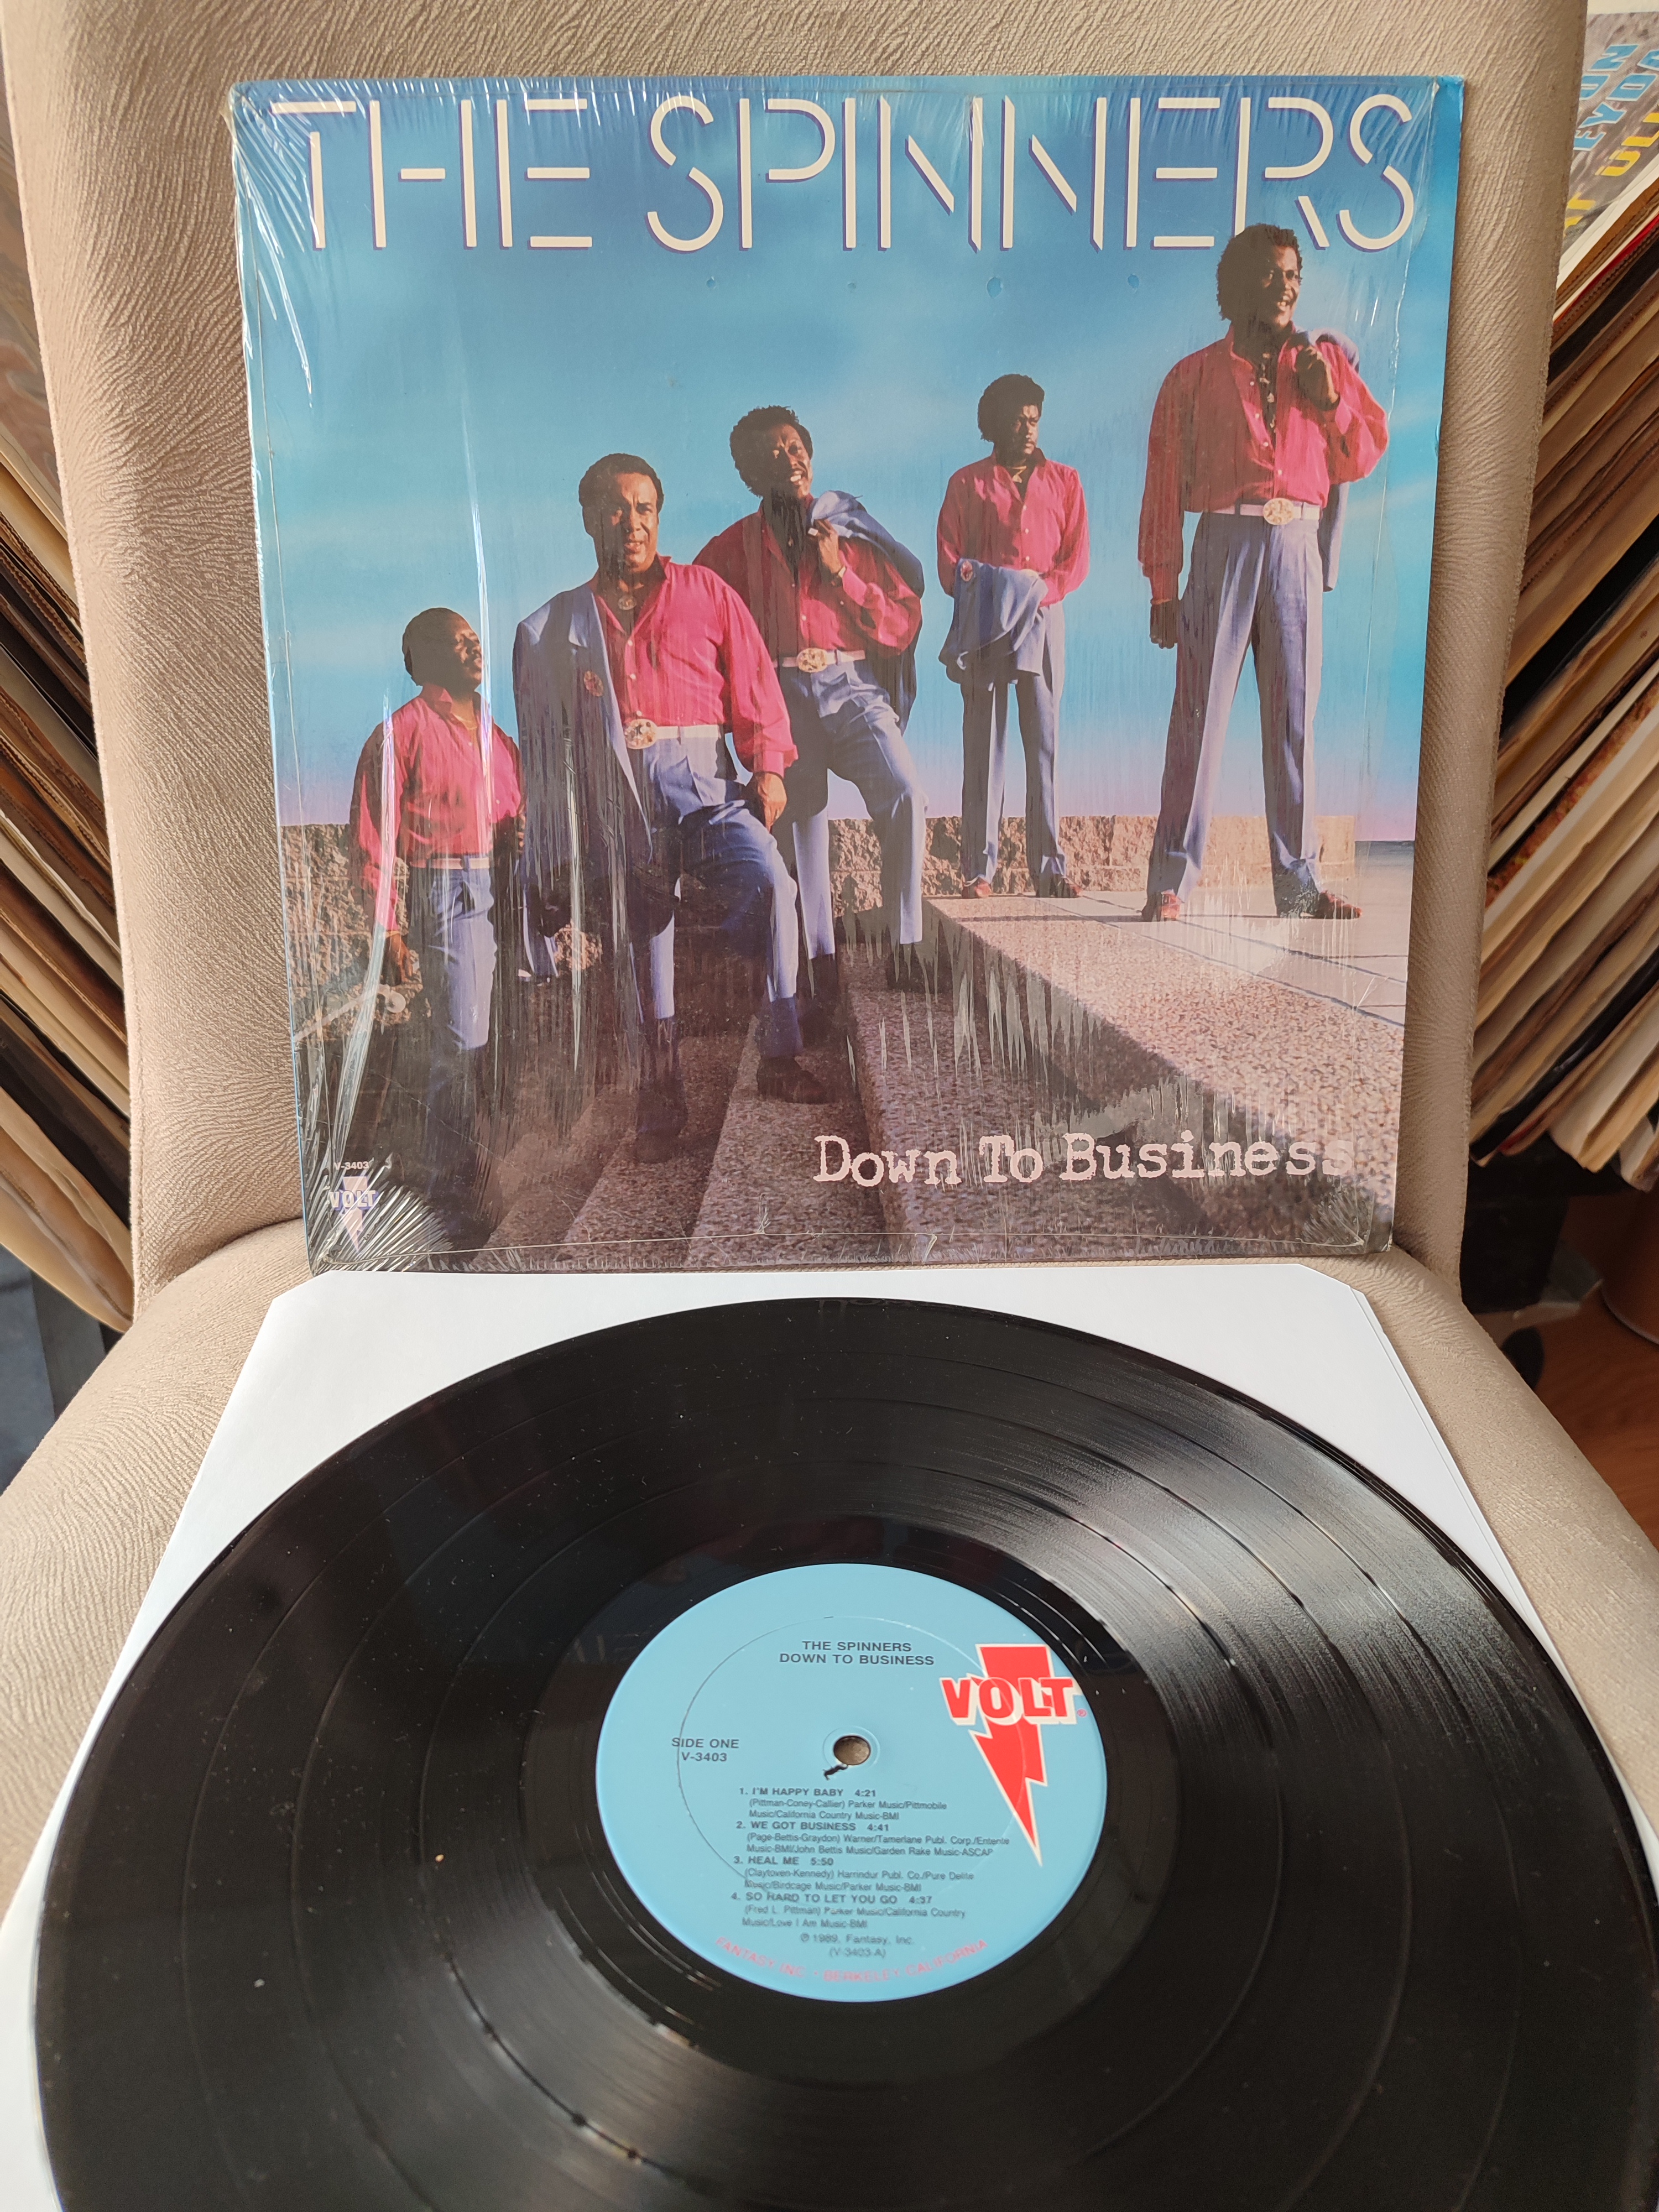 The Spinners - Down To Business - 1989 USA Basım Albüm  LP Plak - Funk /  Soul - 2. EL